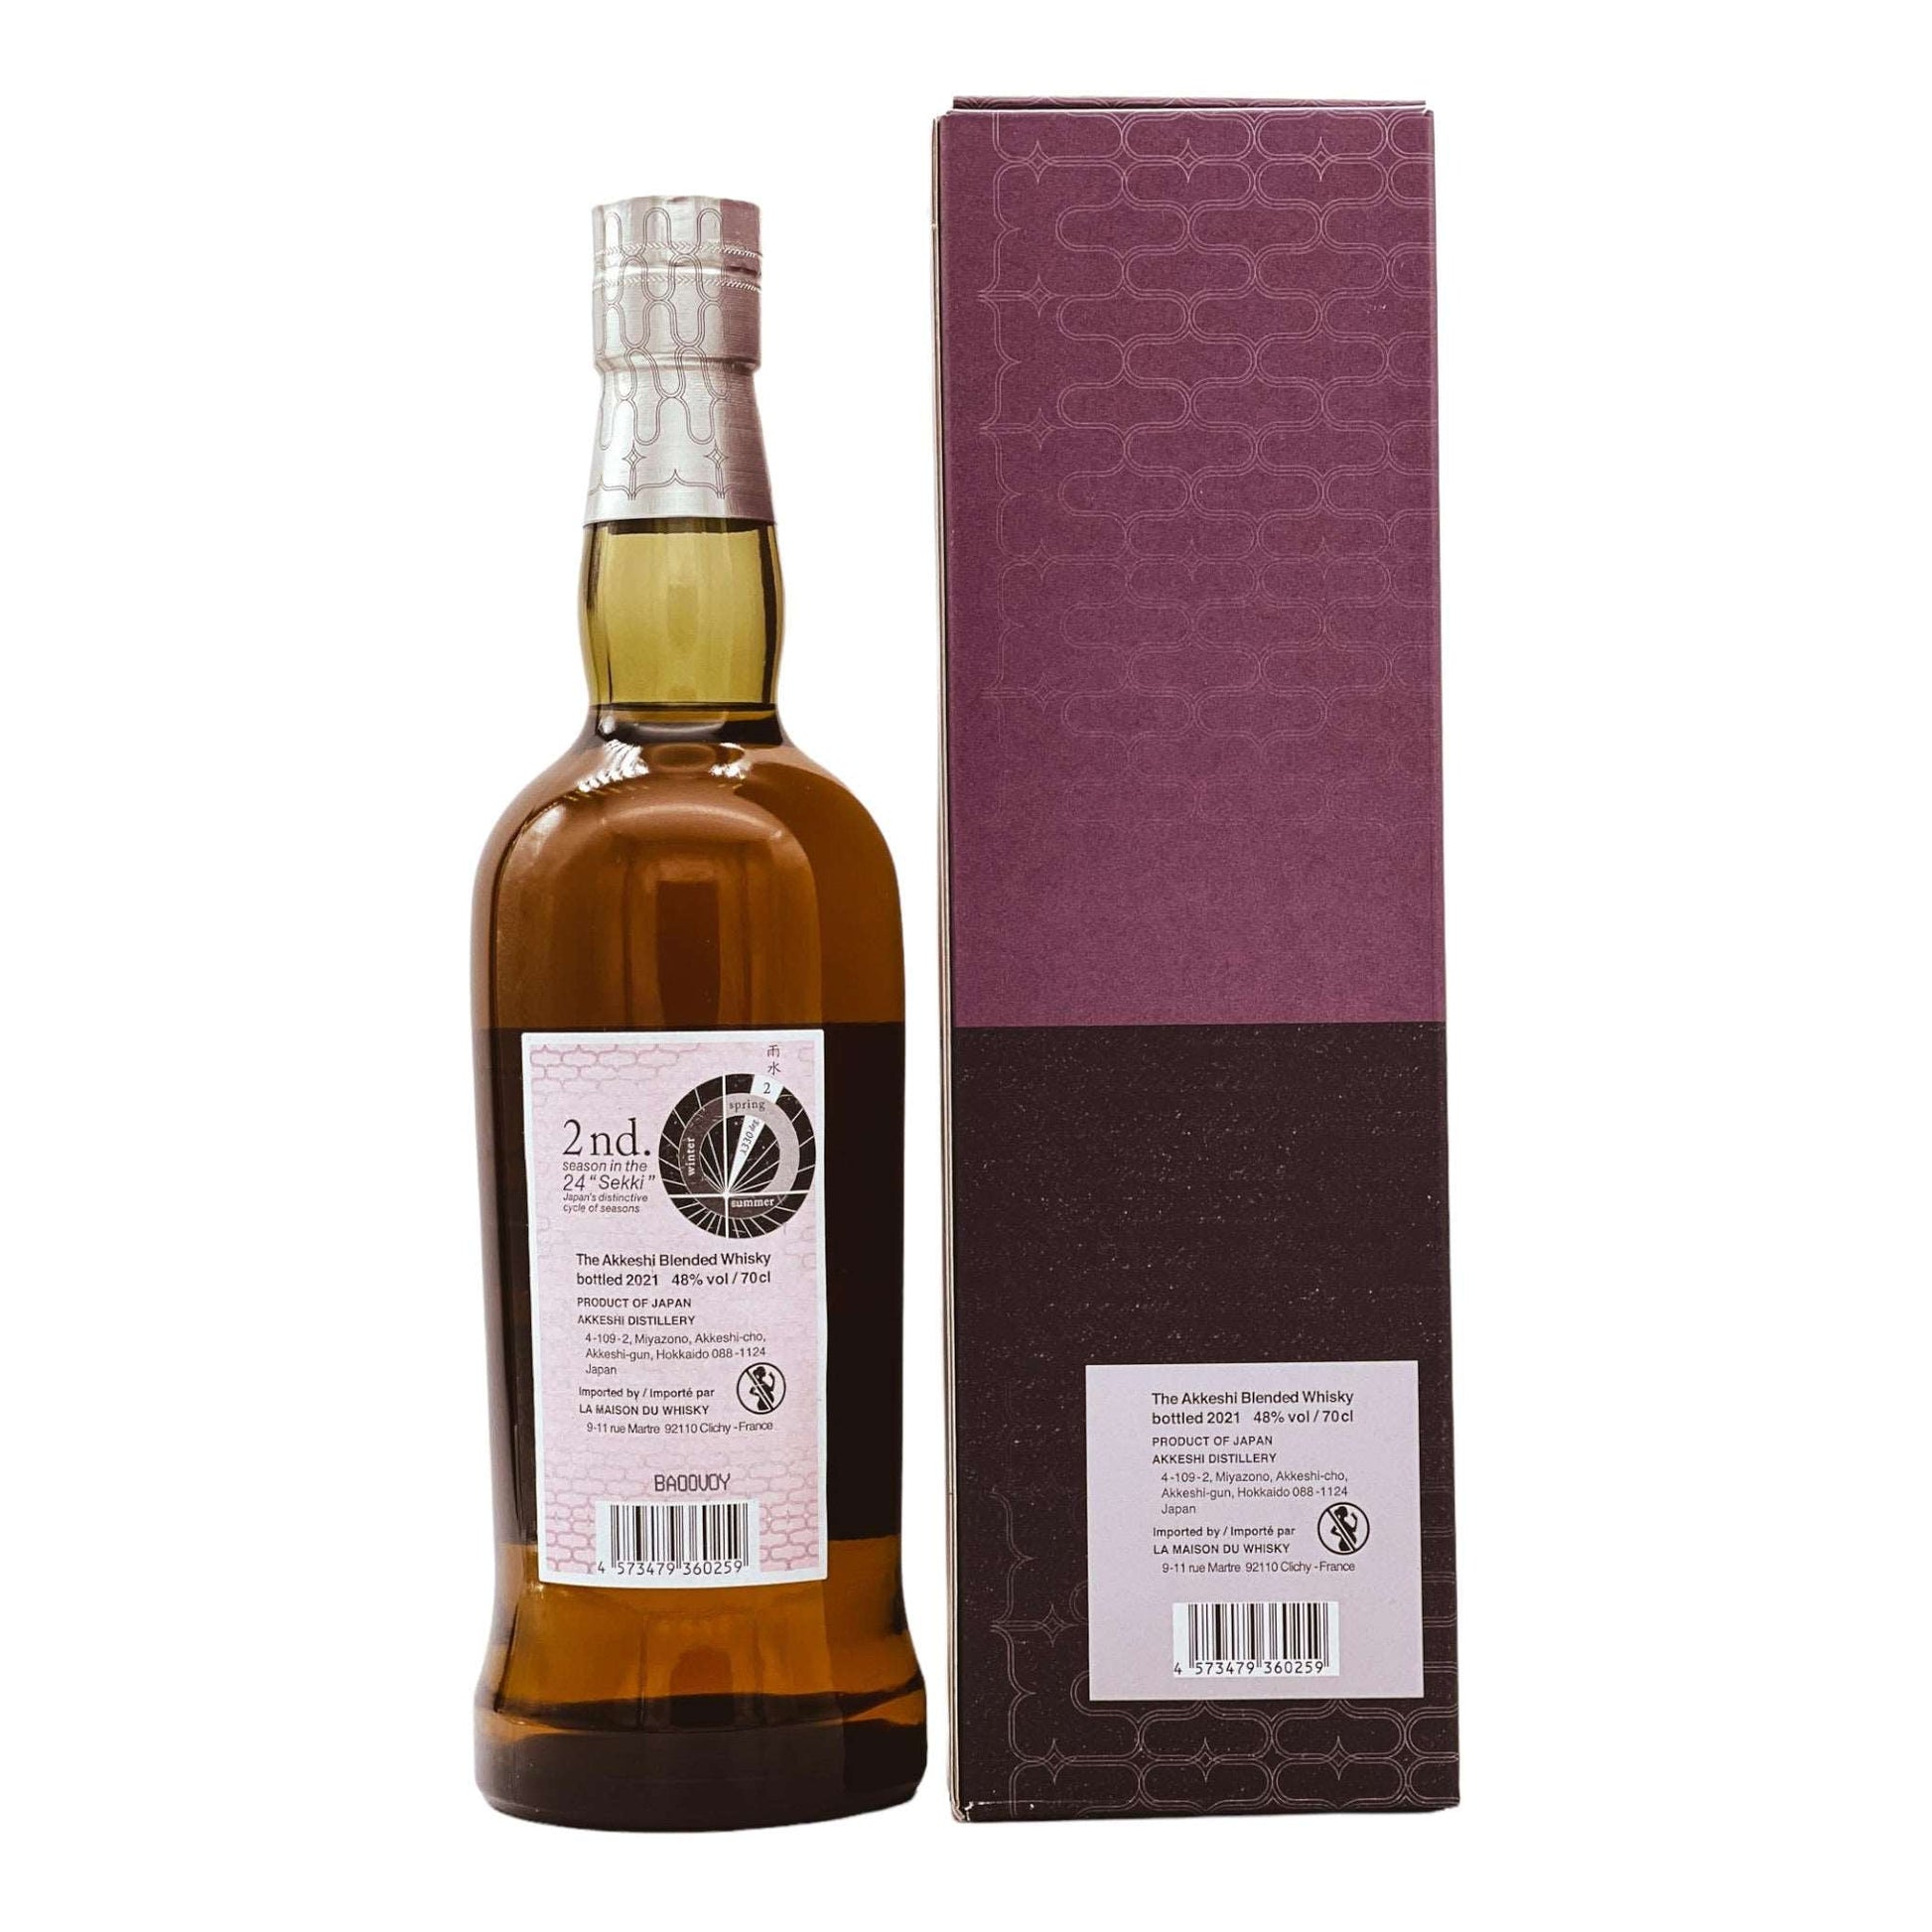 Akkeshi | Usui | 2021 Limited Release | Blended Japanese Whisky | 0,7l | 48%GET A BOTTLE